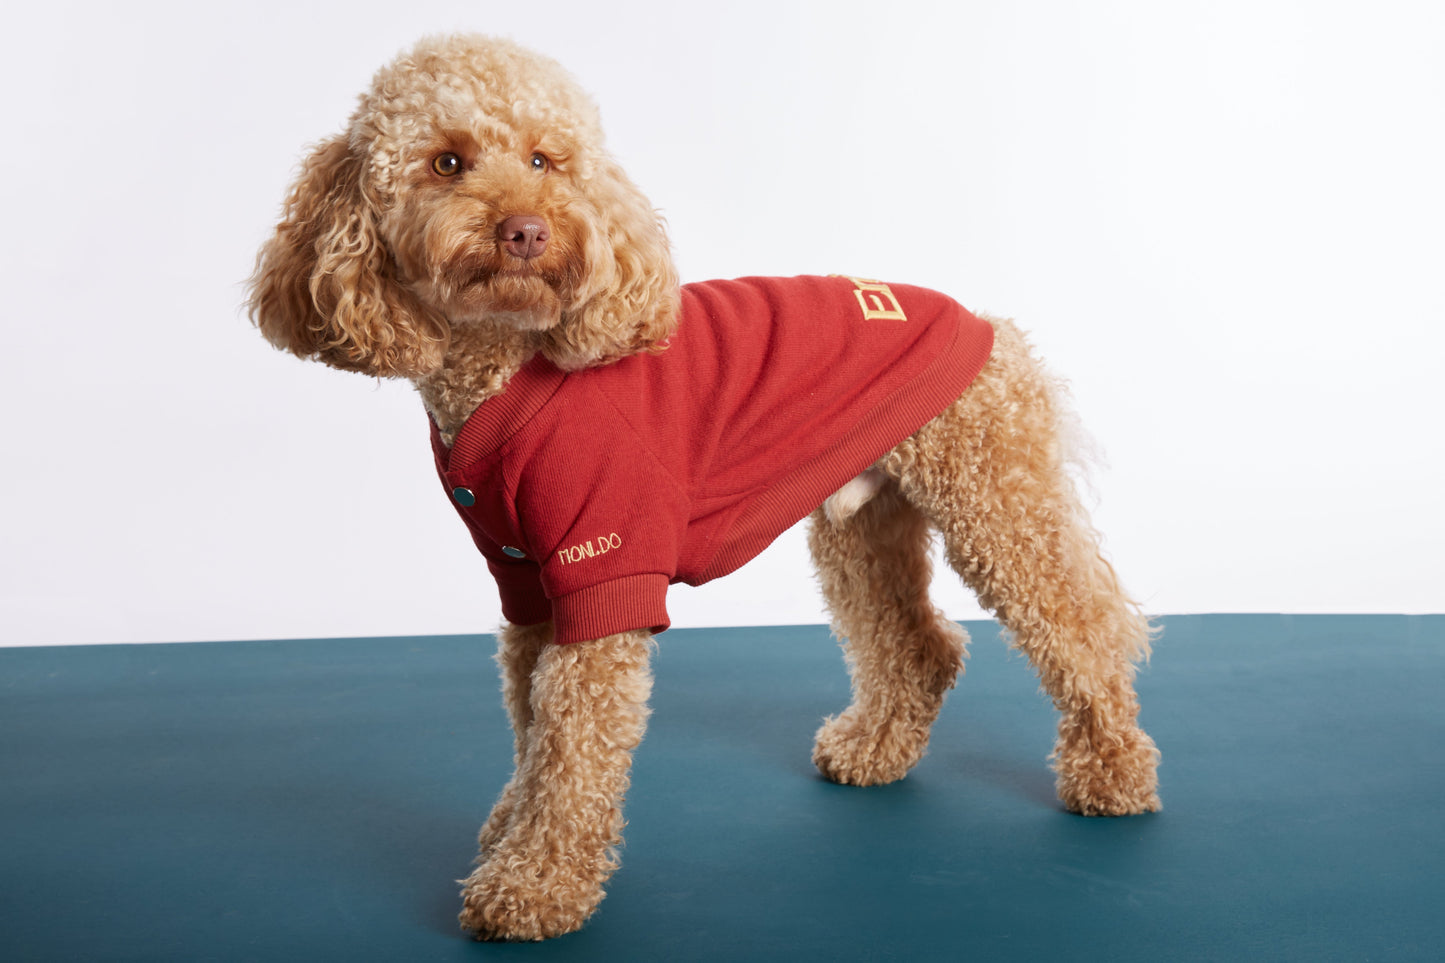 
                  
                    Kırmızı Köpek Kolej Ceketi - "Enjoy" Sloganlı
                  
                